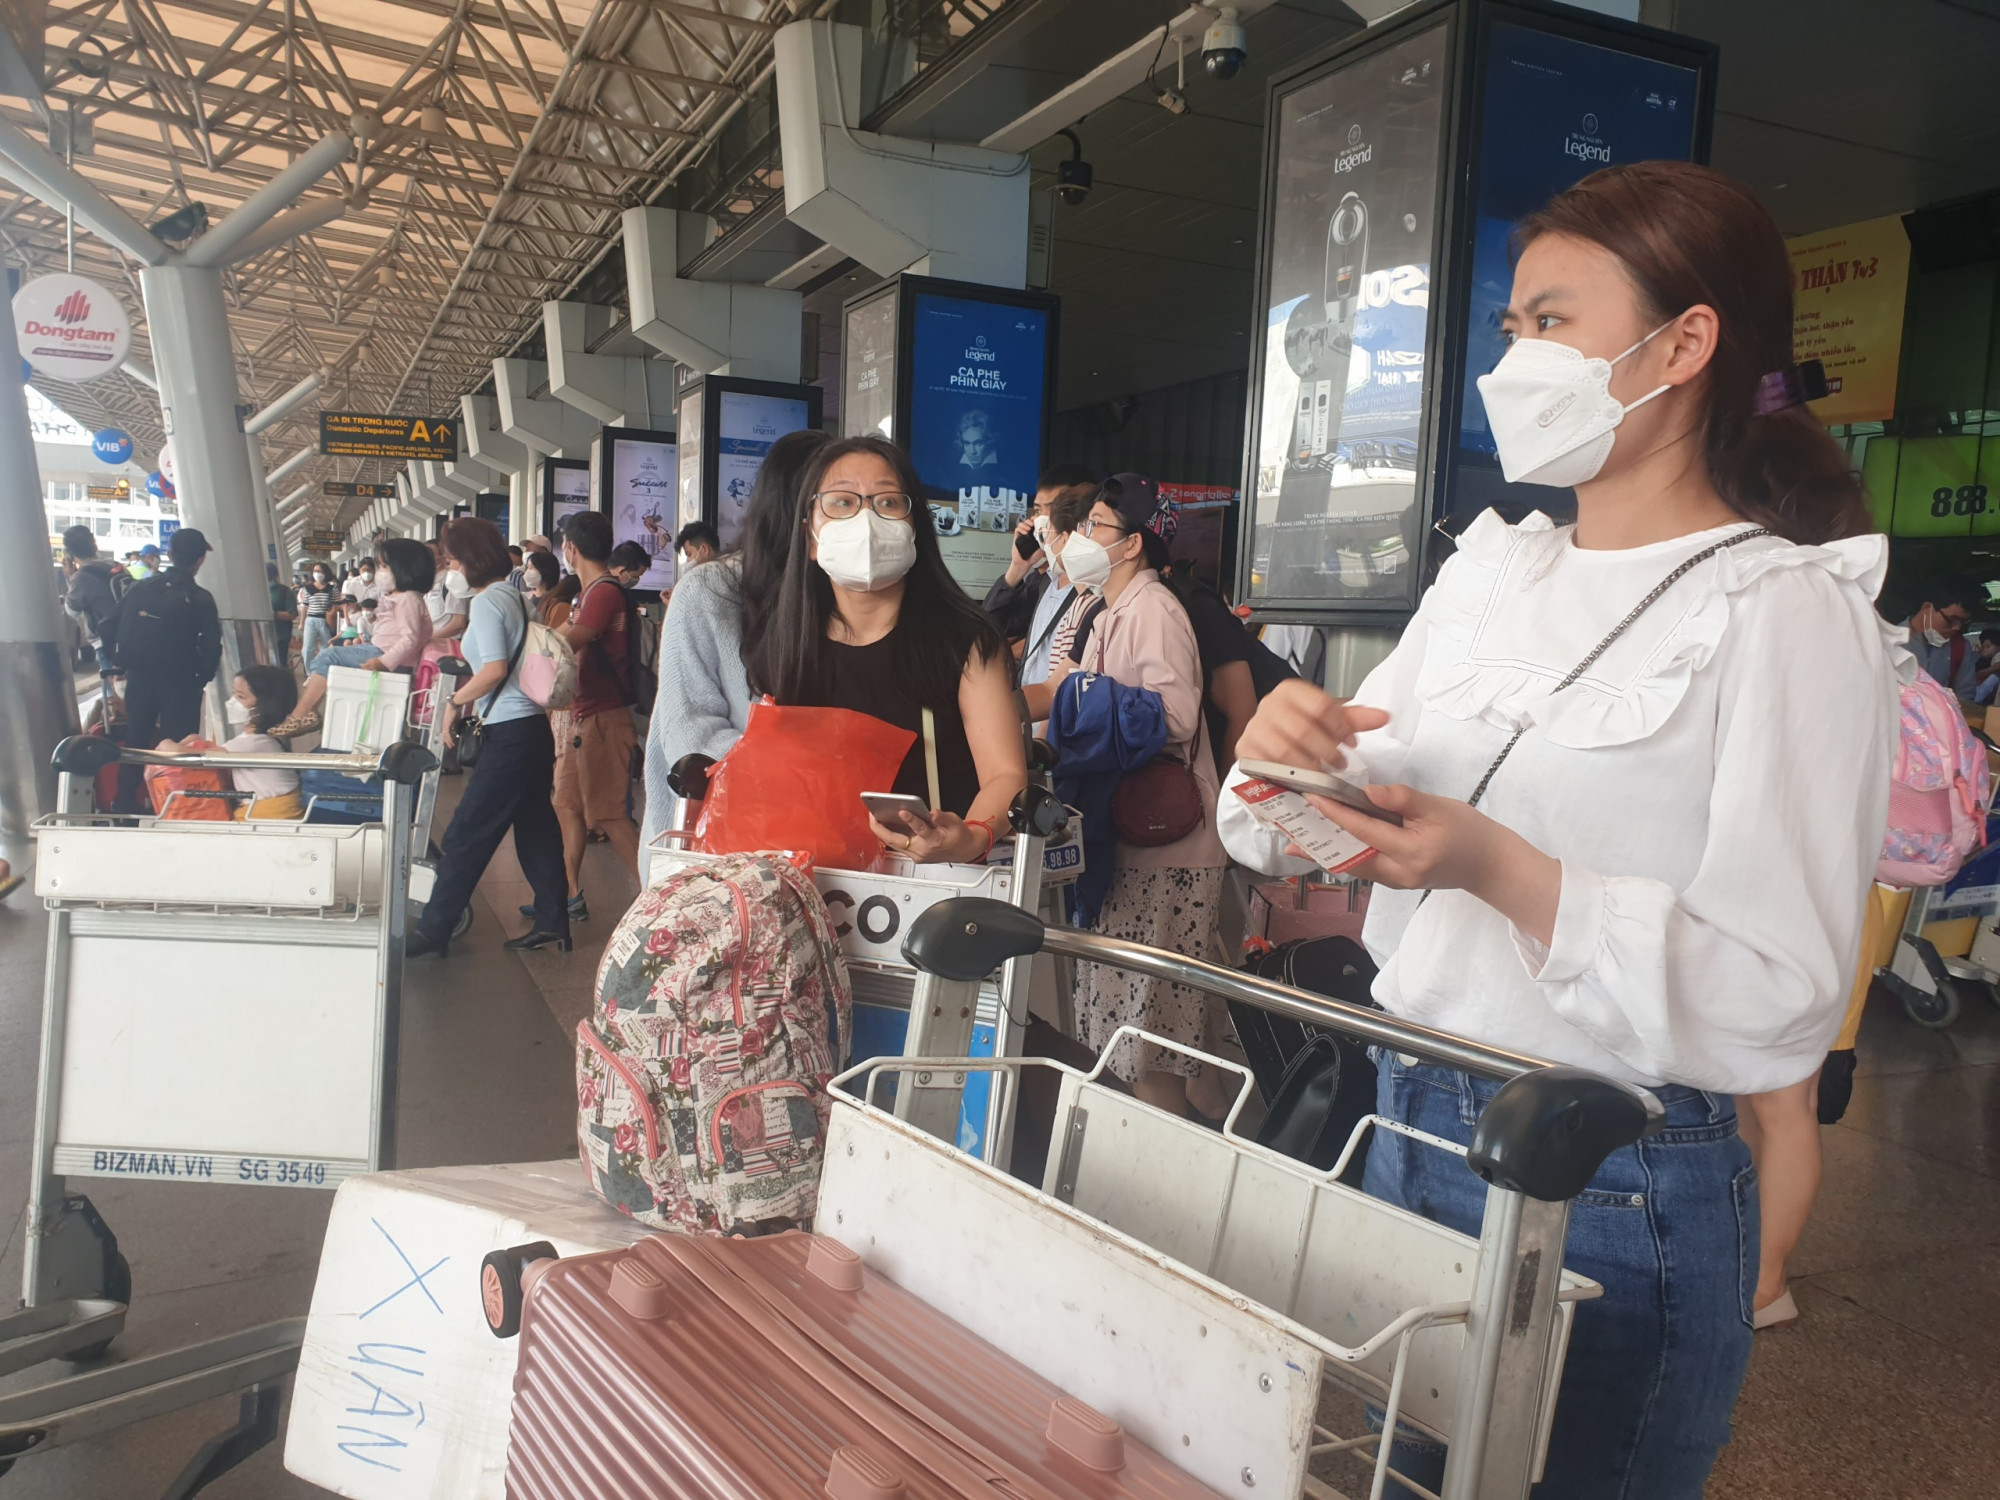 Chị Hồng Hạnh (ngụ quận Gò Vấp) cho biết vừa cùng gia đình đi du lịch ở Nha Trang về. Hôm nay về sân bay có đông đúc nhưng không đến quá tải. Tôi vừa xuống sân bay thì ra khu vực sảnh để chờ em trai lái ô tô đến đón